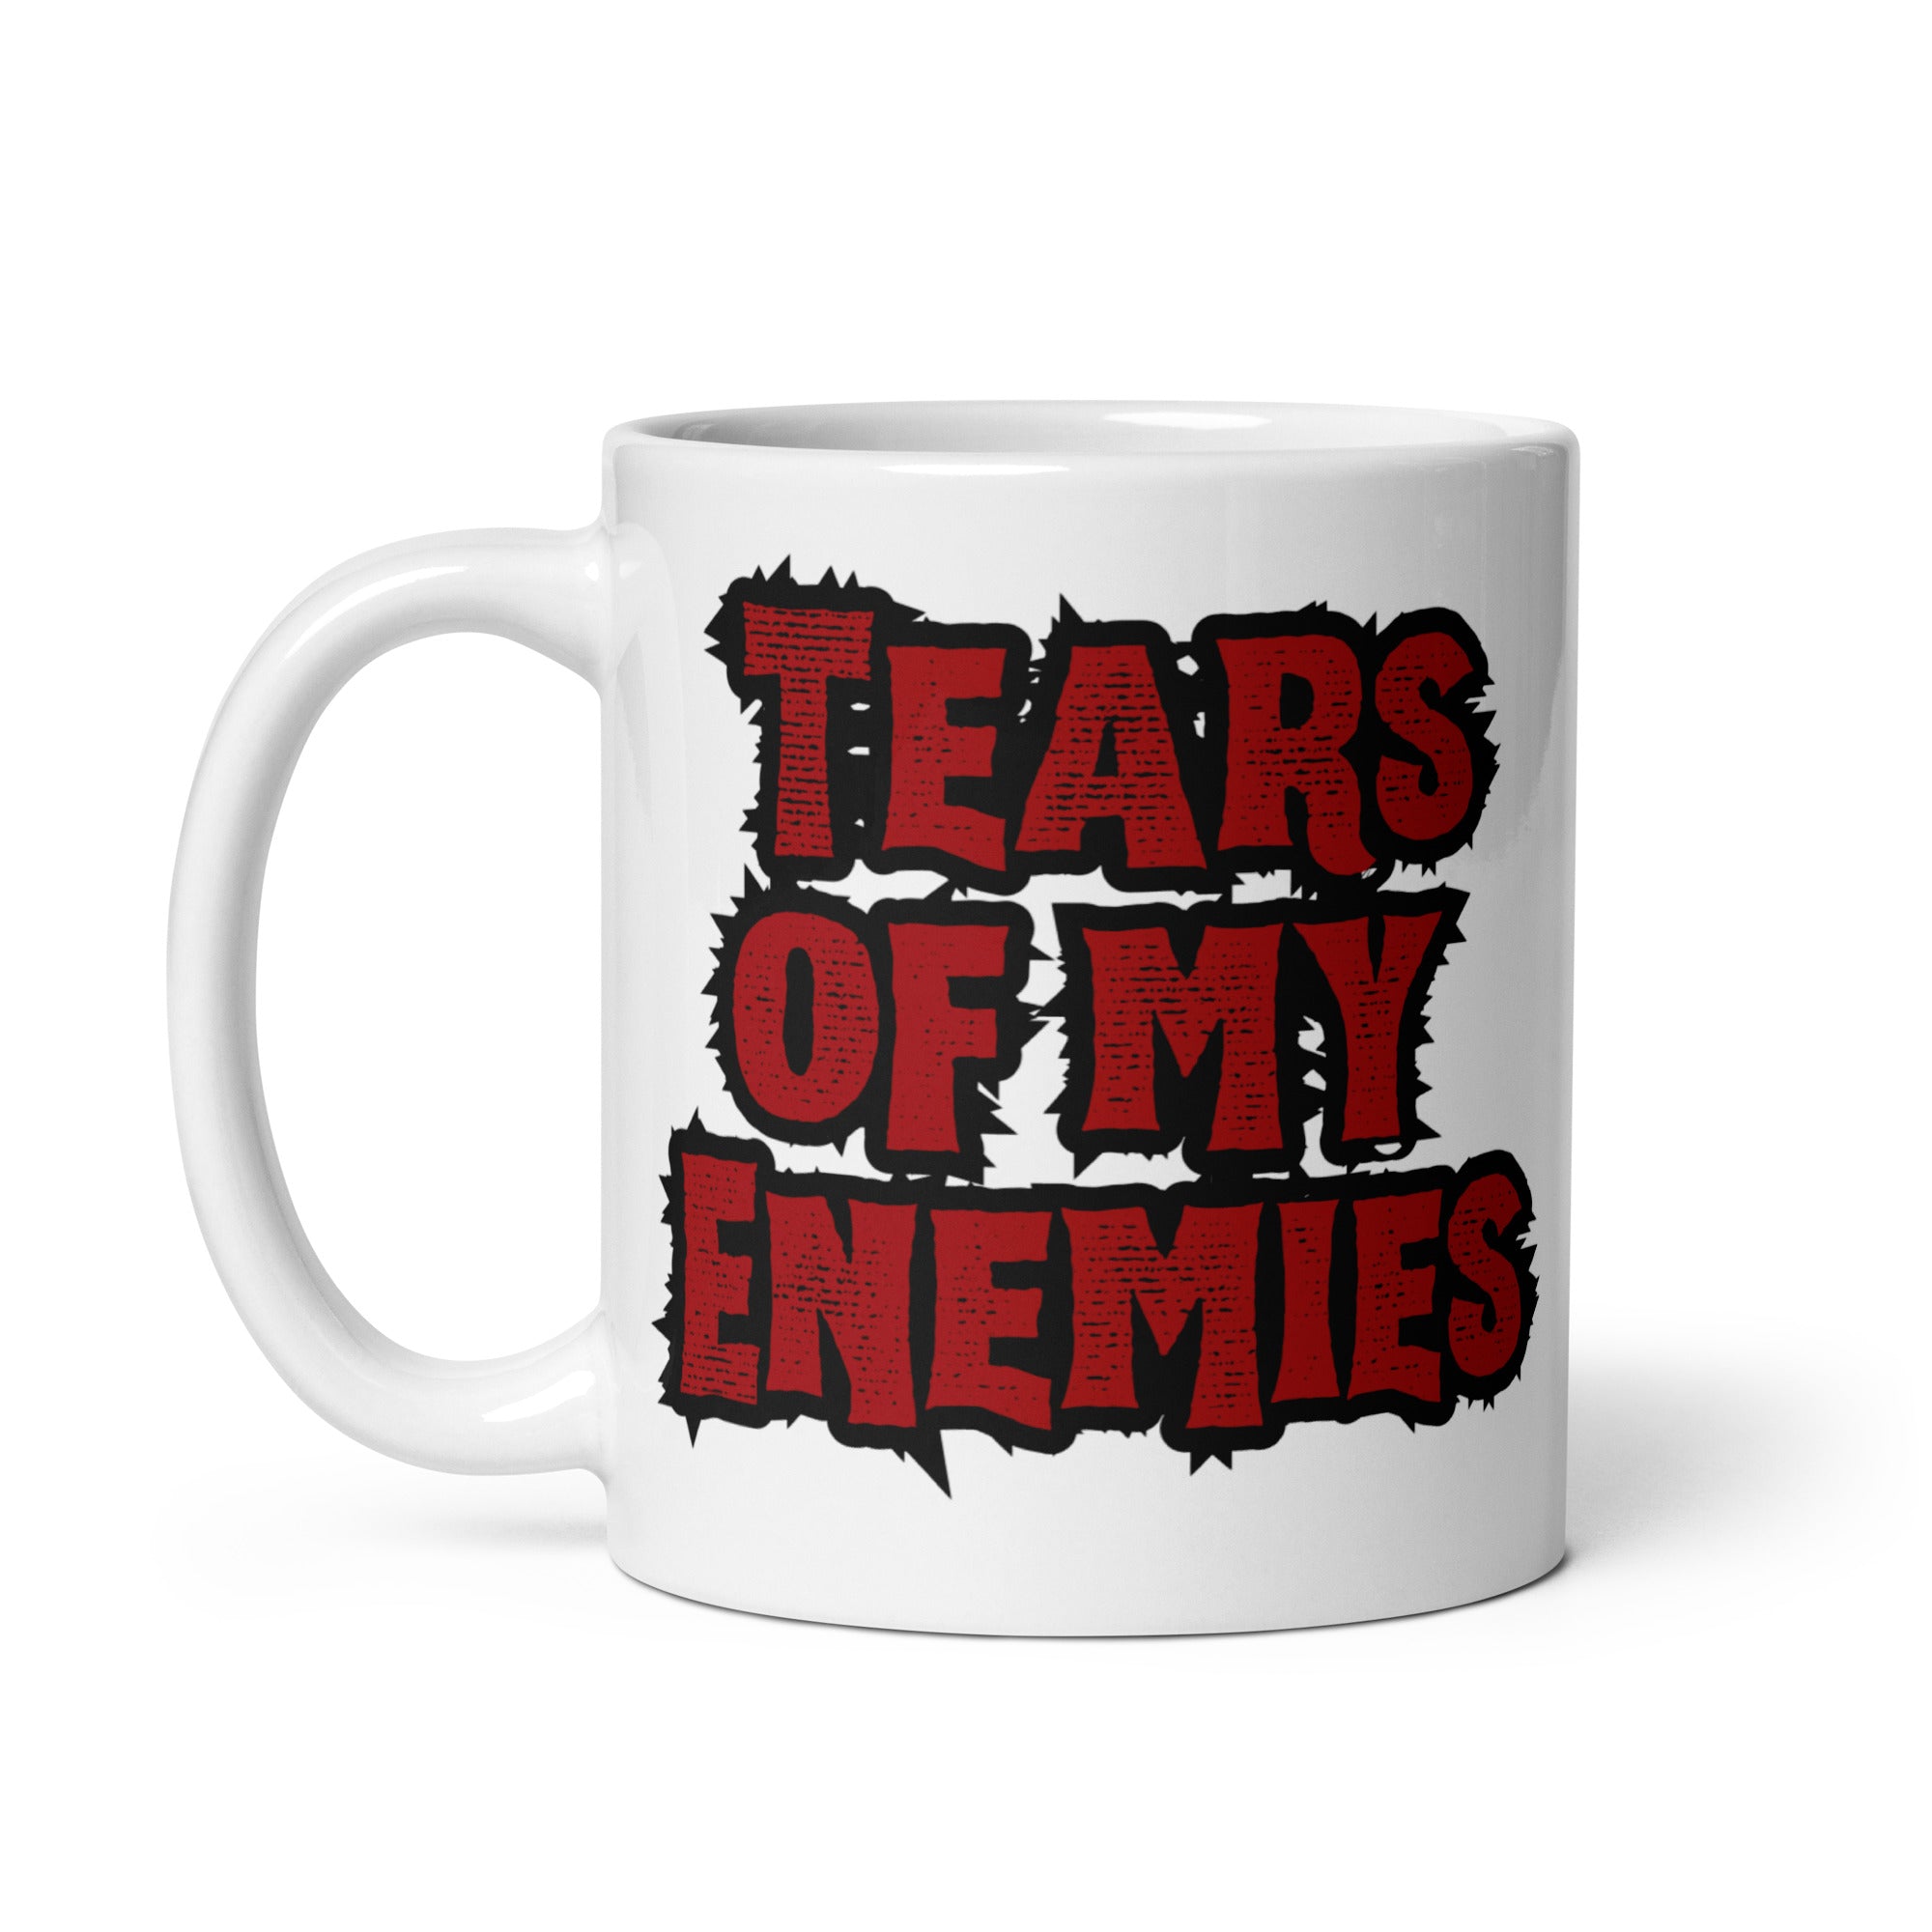 Tears of My Enemies - White Glossy Mug